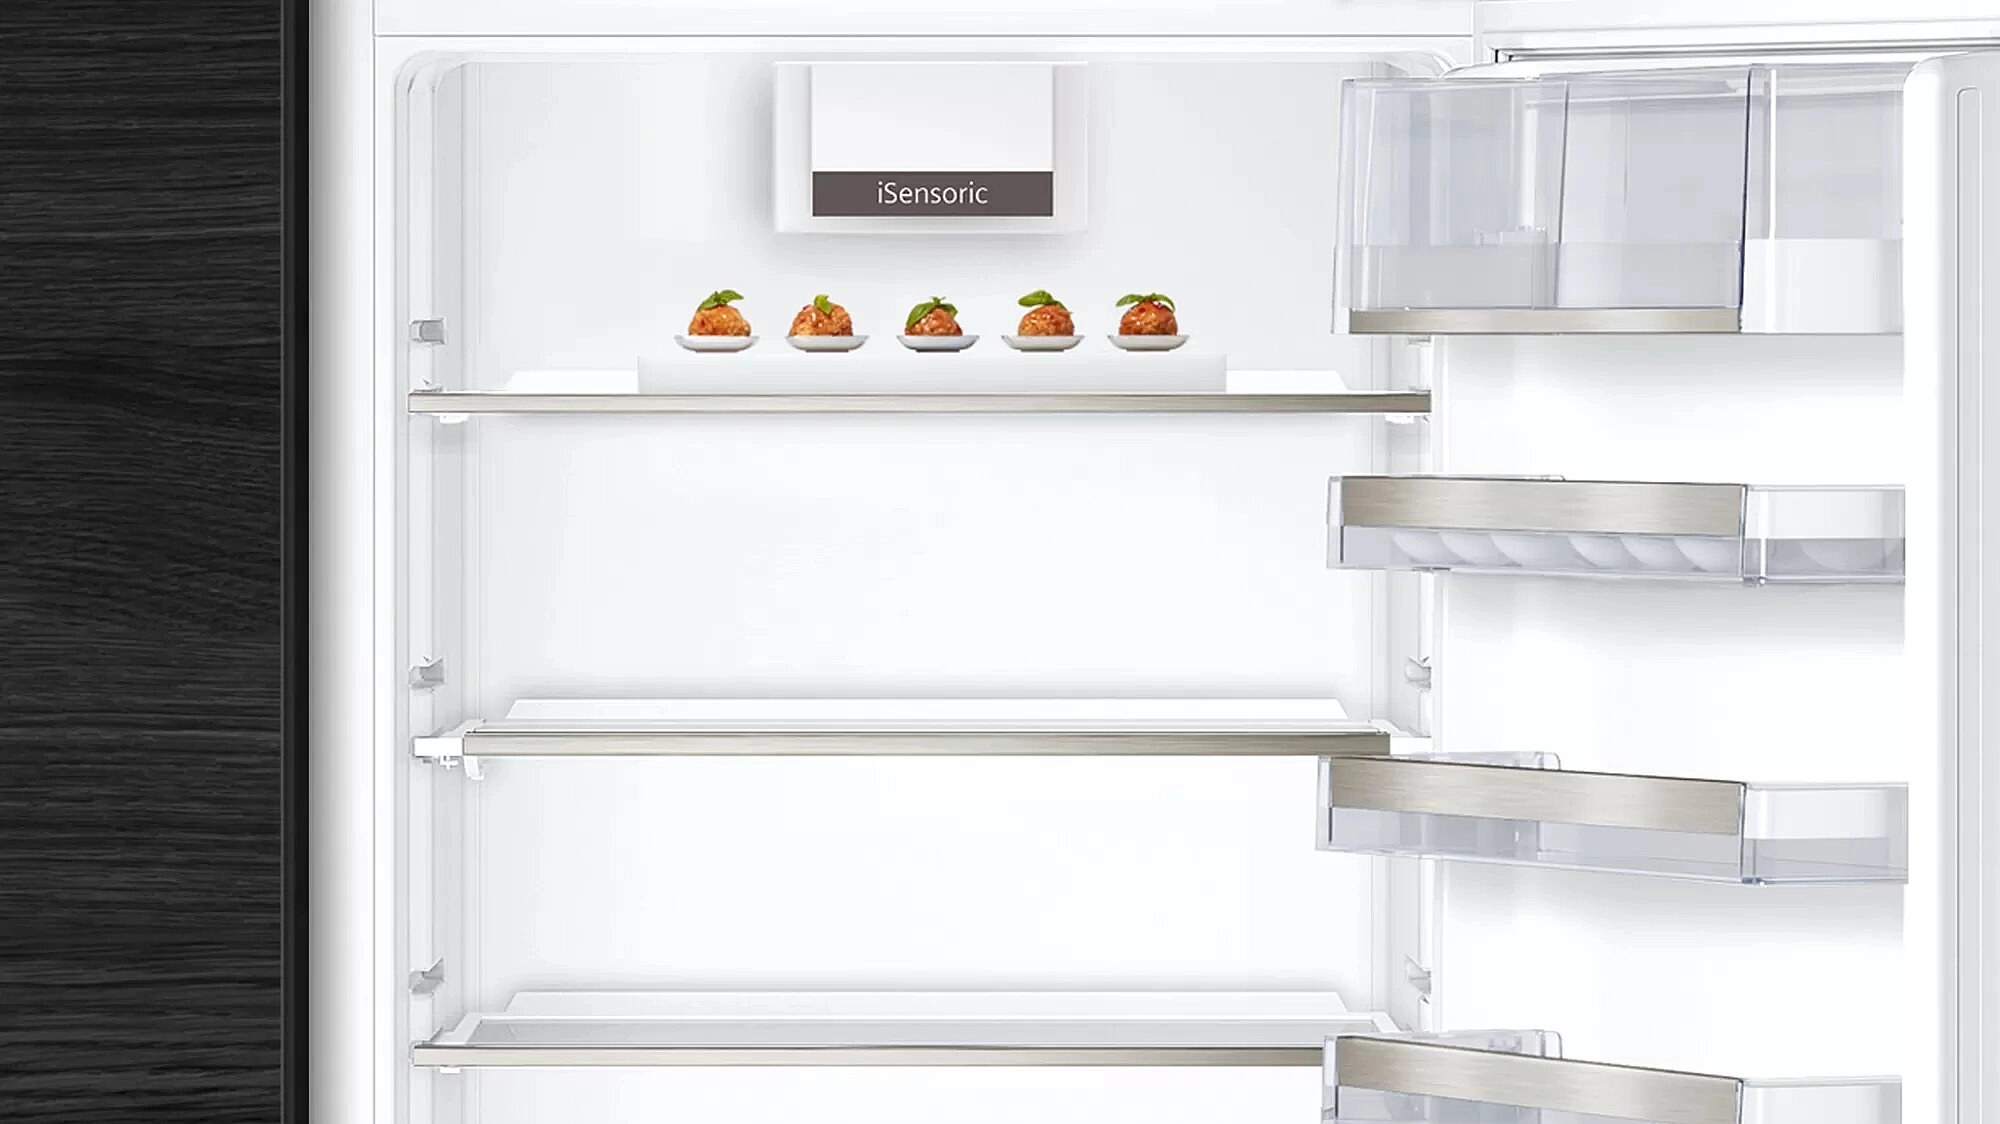 Встраиваемый холодильник Siemens KI86NAD306, 254 л, 178 см, A++, Белый